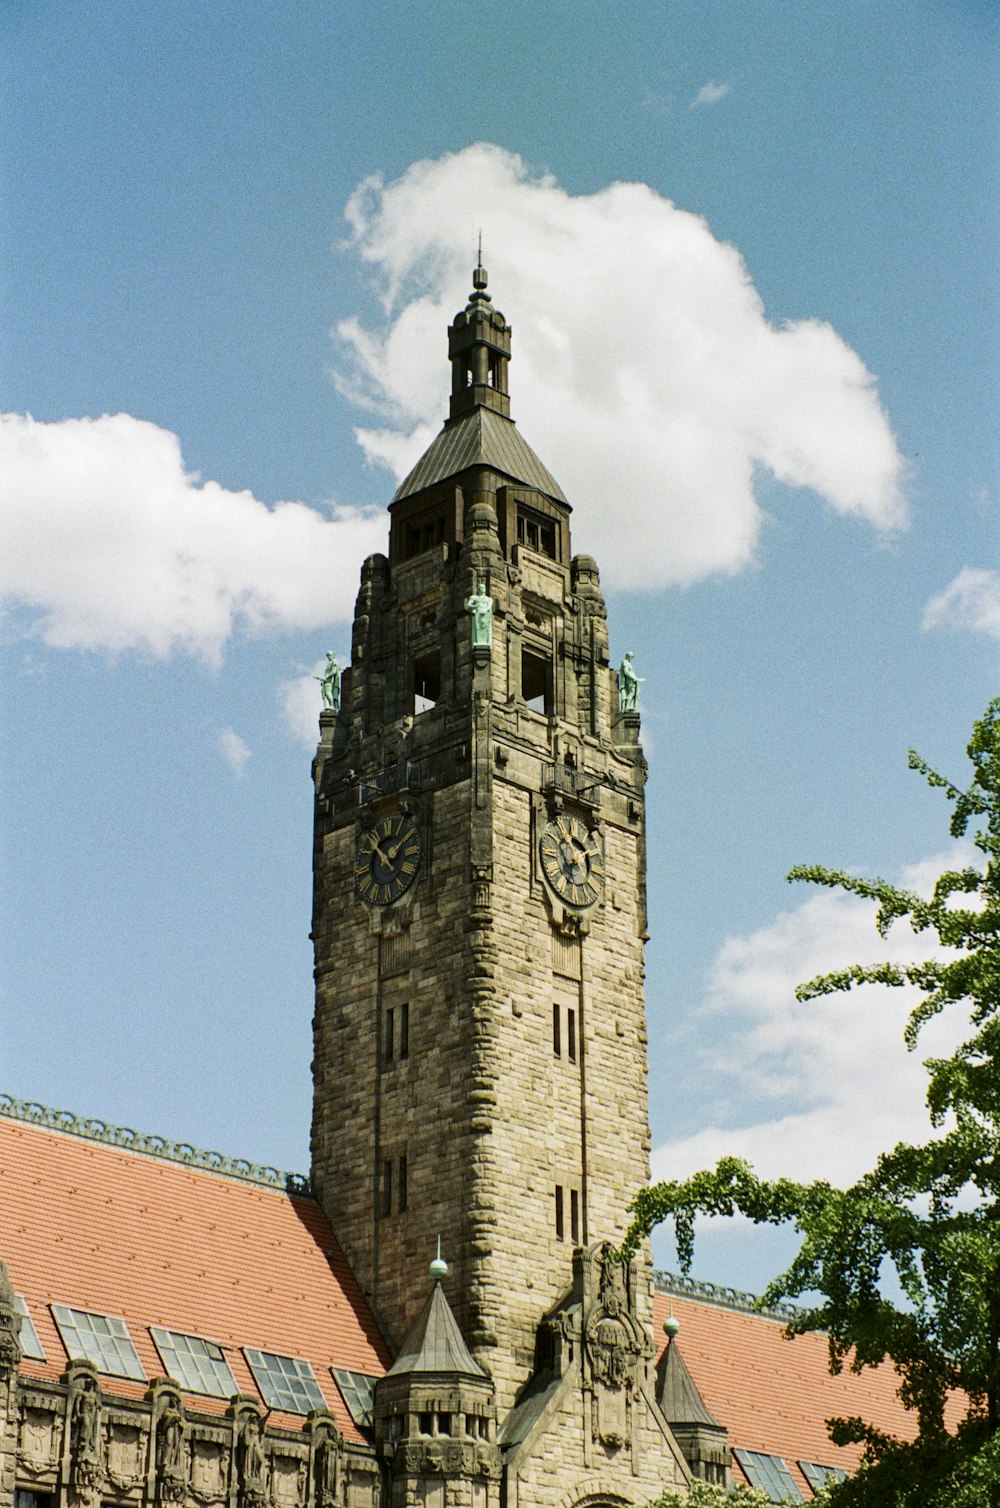 una alta torre de reloj con un reloj en cada uno de sus lados